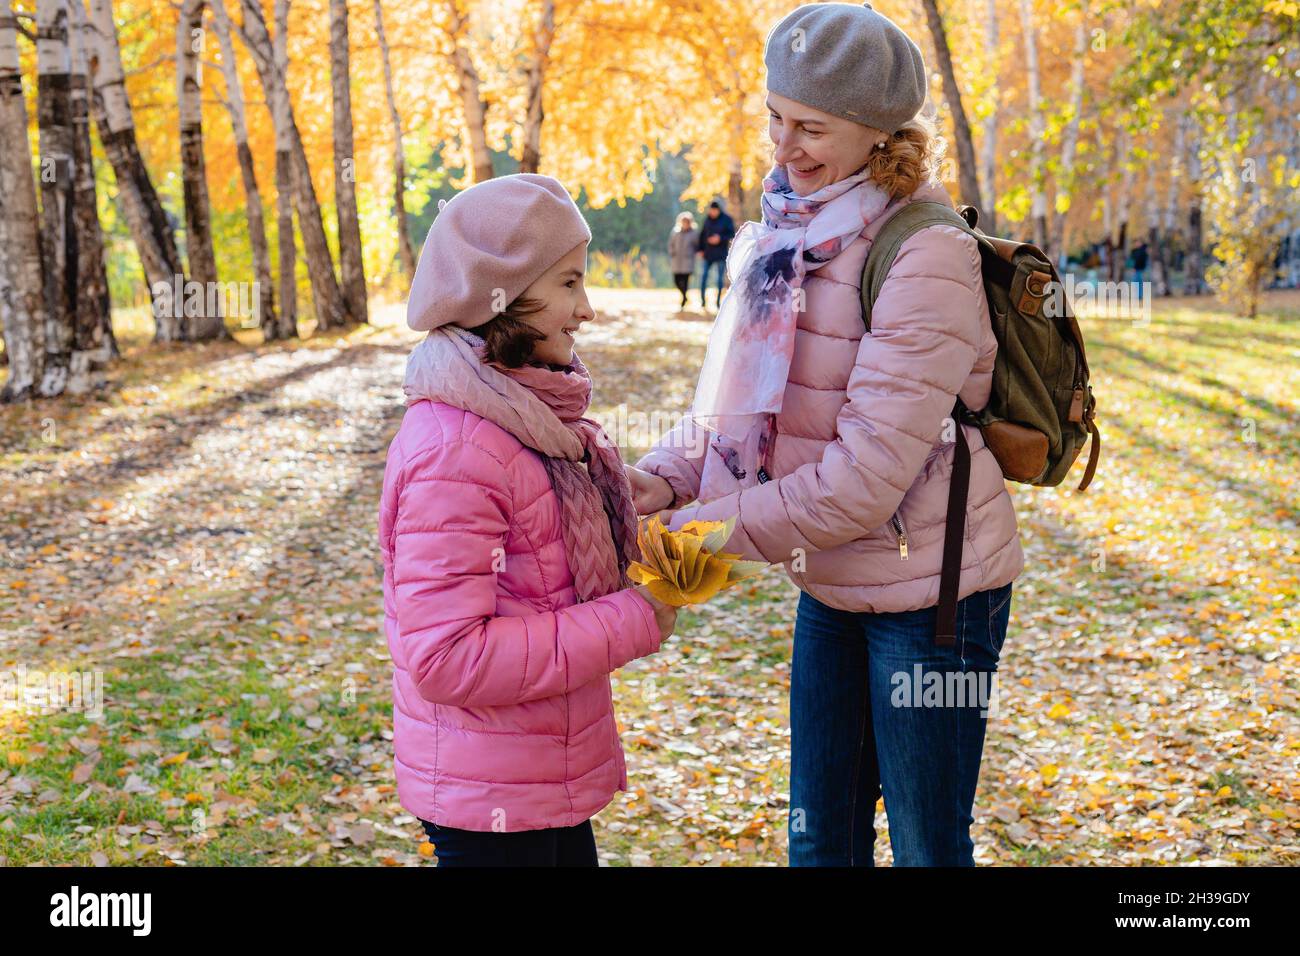 Promenade dans le parc avec des enfants.Mignonne et joyeuse, souriante, la mère et la fille du caucase passent du temps dans le parc d'automne.Jour d'automne ensoleillé.Une famille heureuse.P Banque D'Images